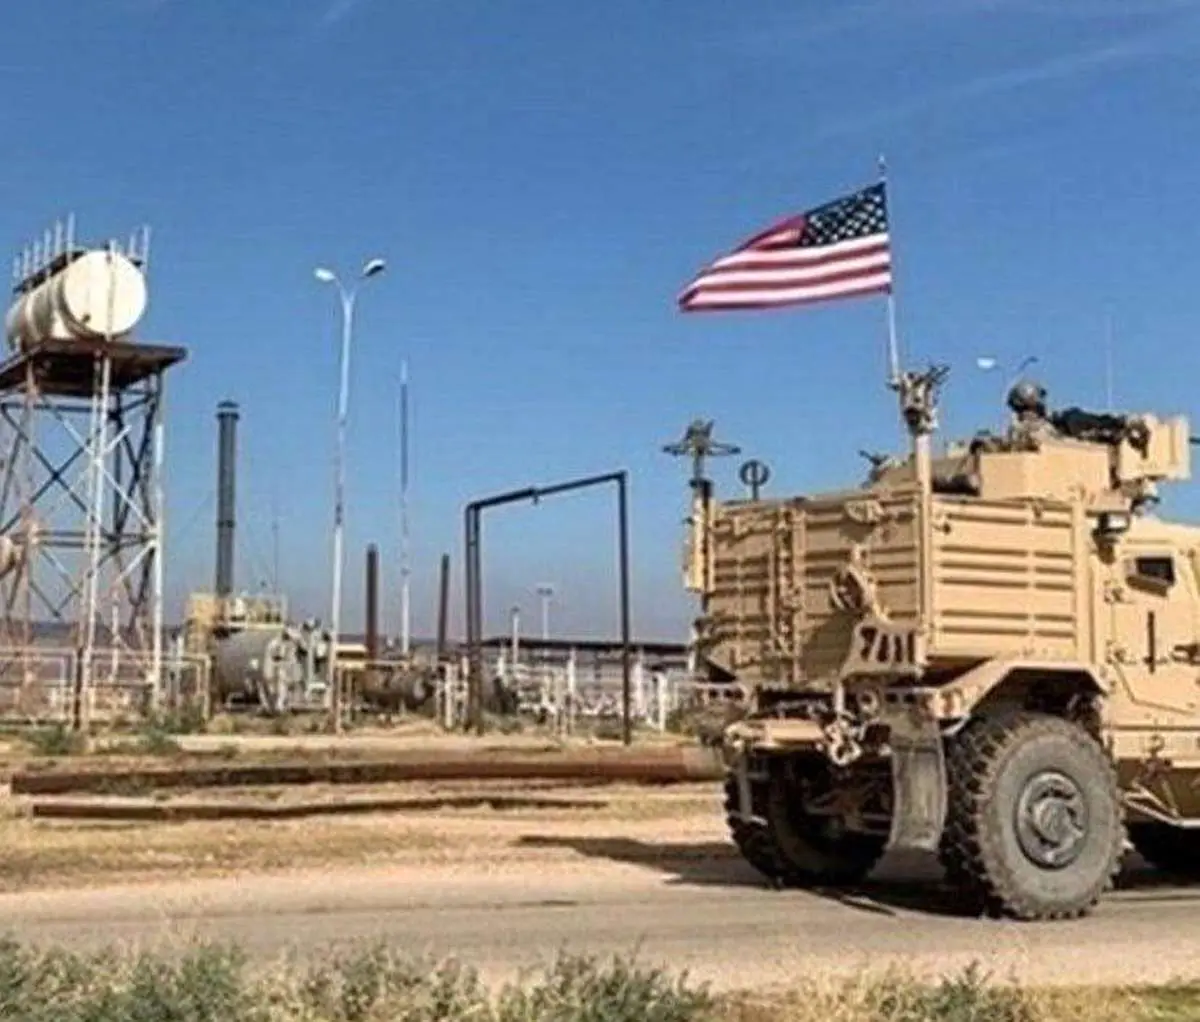 
ماجرای مشارکت اردن در حمله آمریکا به عراق